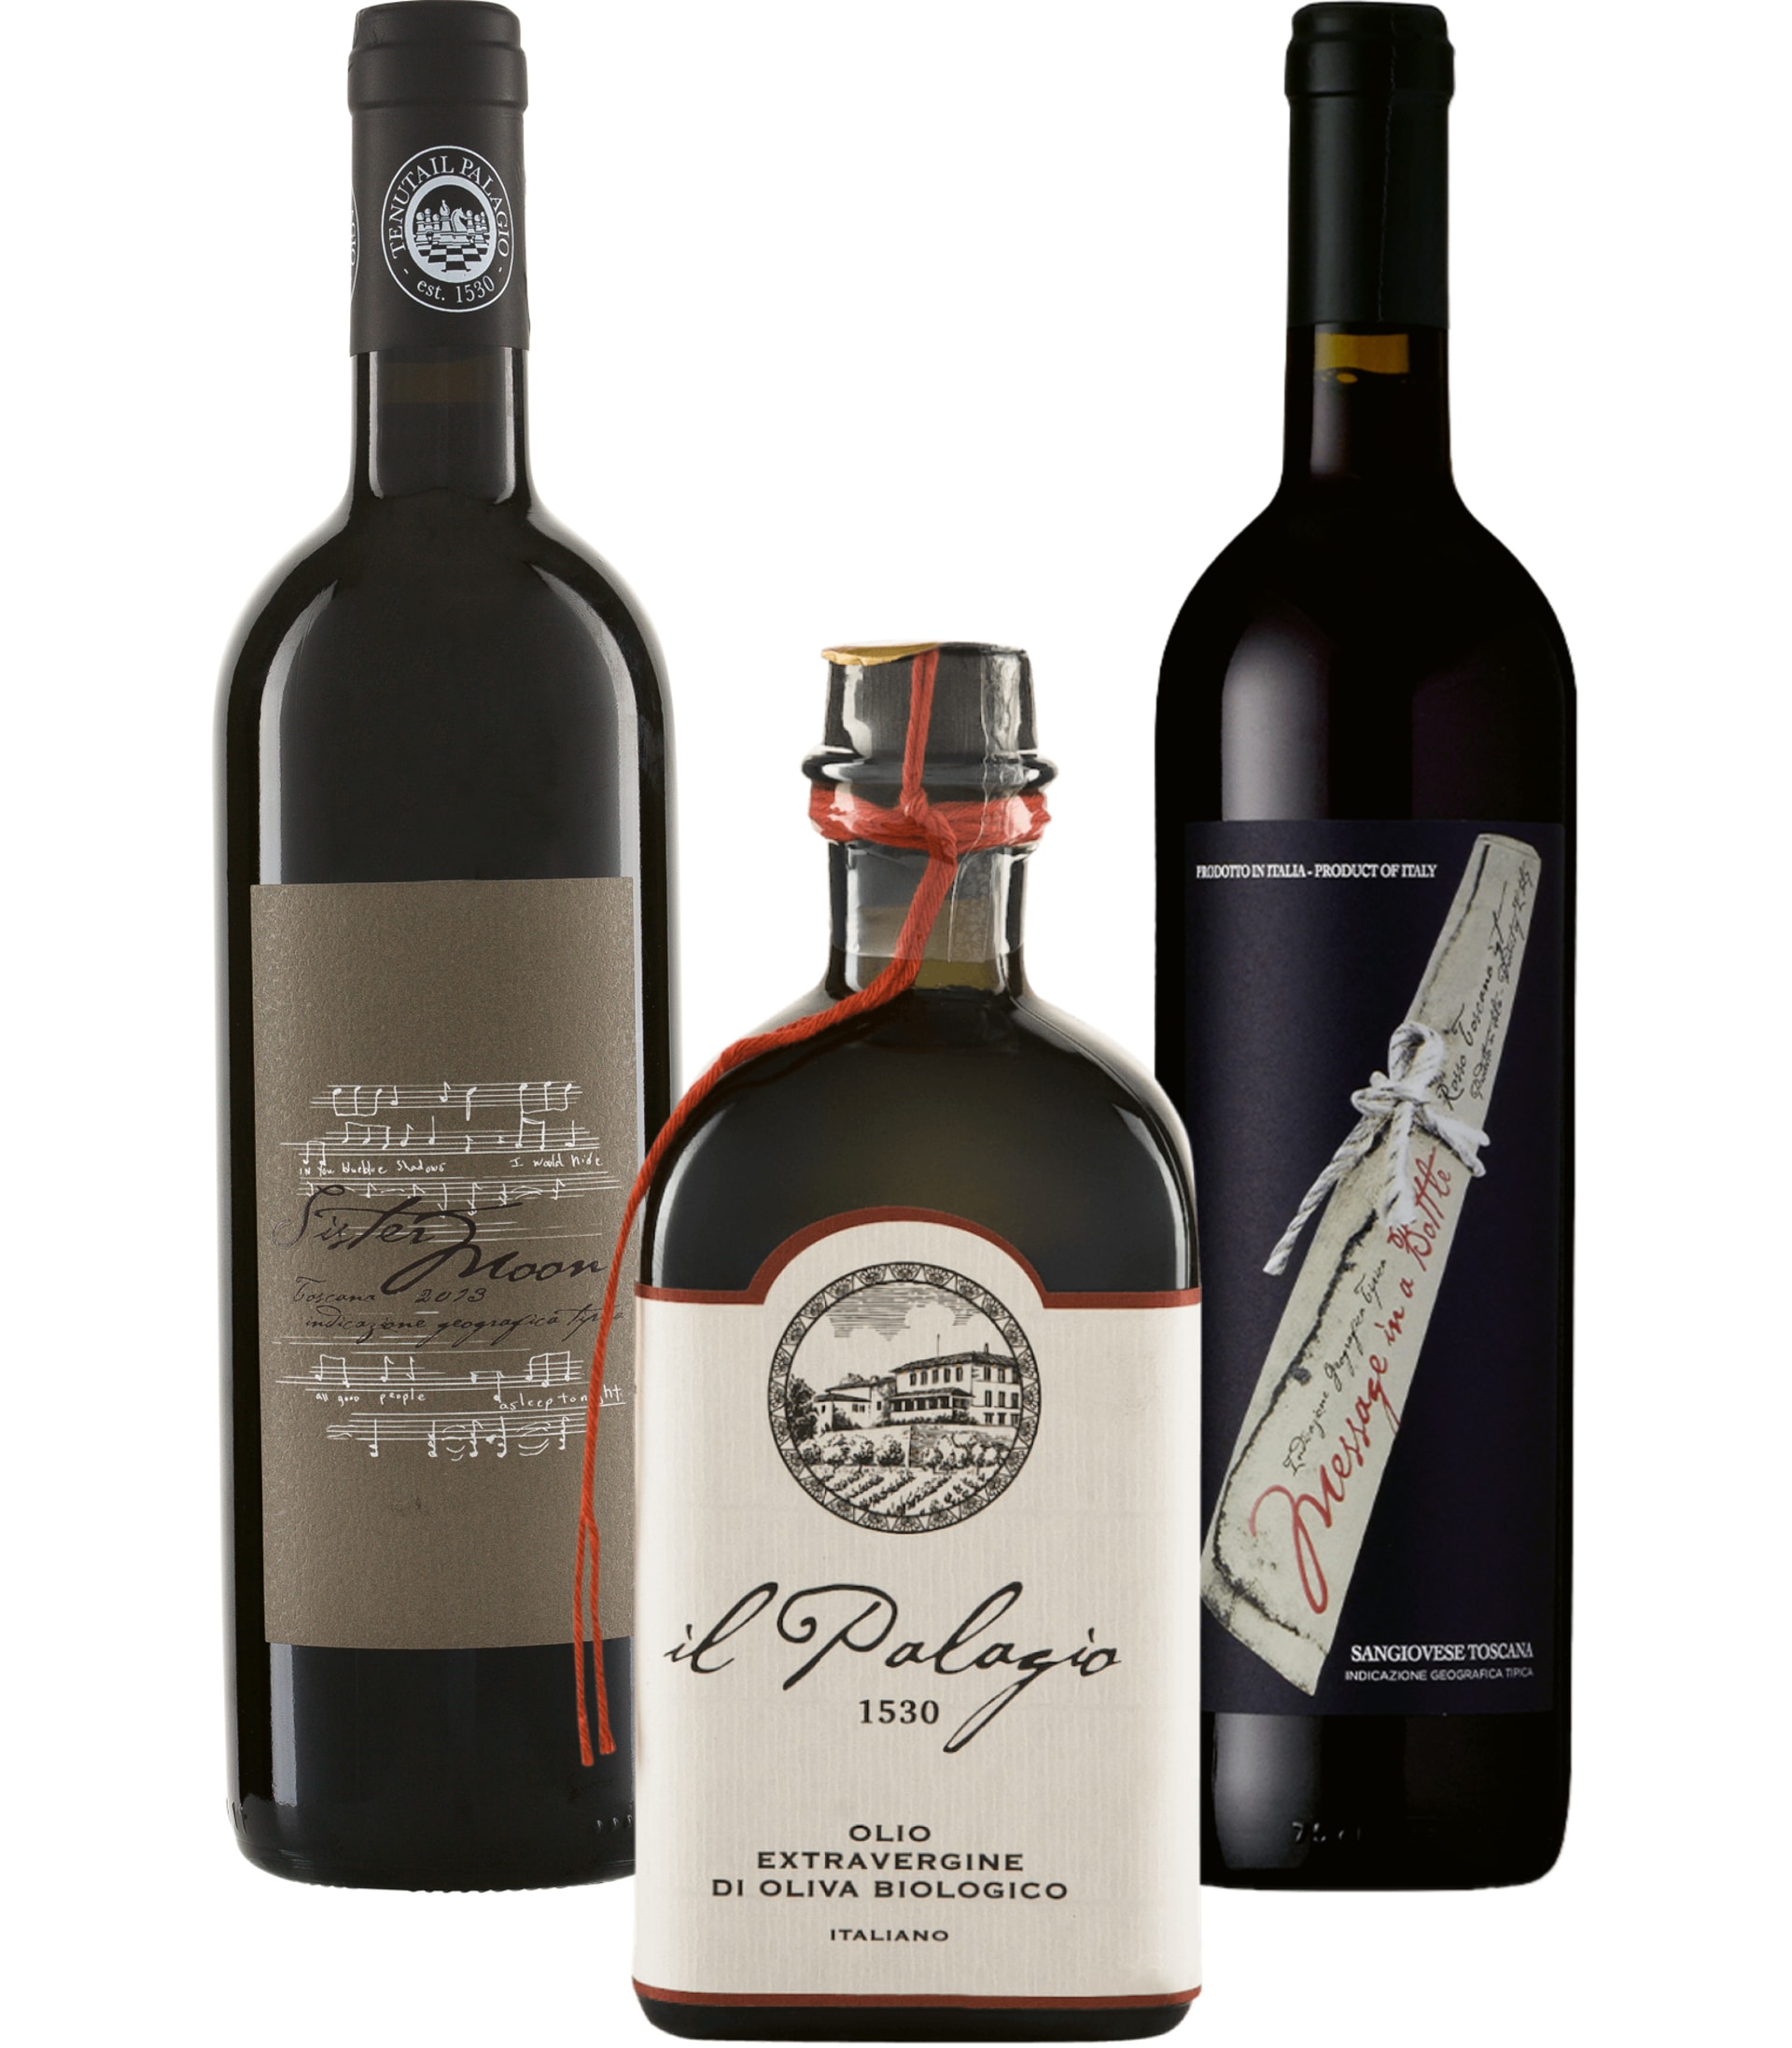 Stingova produkce z vinic Il Palagio v regionu Chianti se těší velké oblibě, podobně úspěšné jsou i olivové oleje. Veškeré produkty jsou z kategorie bio.